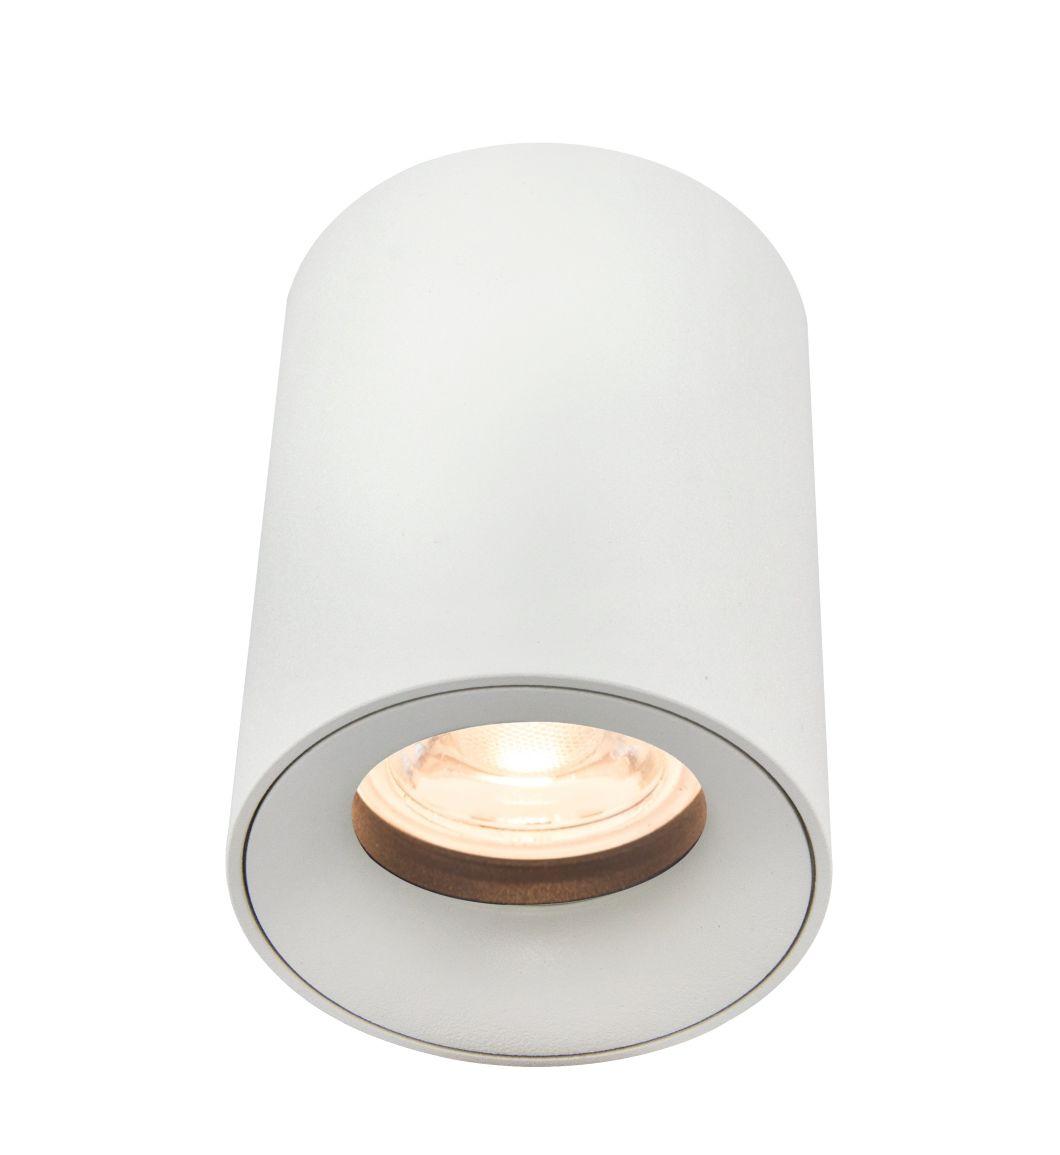 Energy Saving Down Light Fixture GU10 Ceiling Lamp for Bedroom EMC